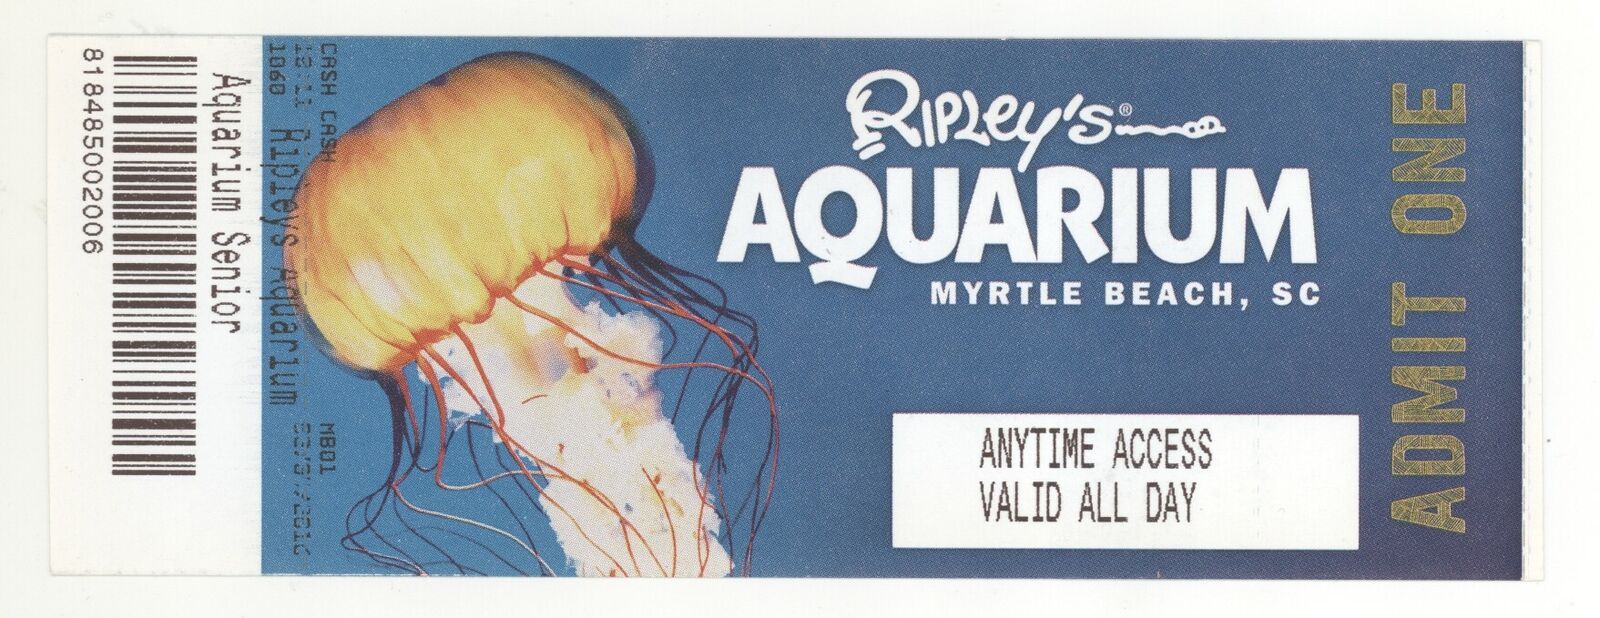 Soirée en famille à l'aquarium Ripley de Myrtle Beach le 21 septembre - S L1600